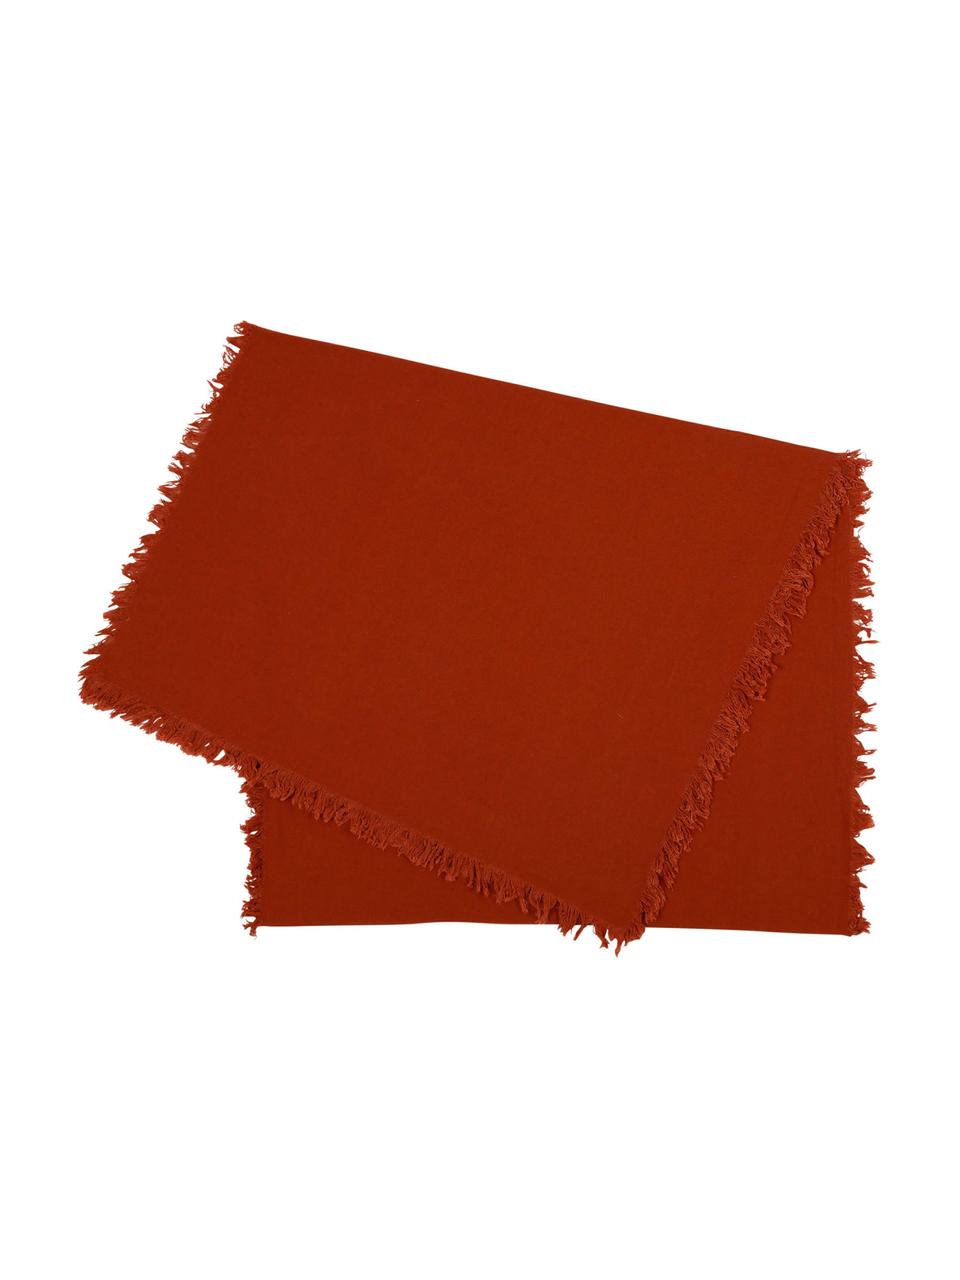 Baumwoll-Tischläufer Nalia in Rot mit Fransen, Baumwolle, Rot, B 50 x L 160 cm